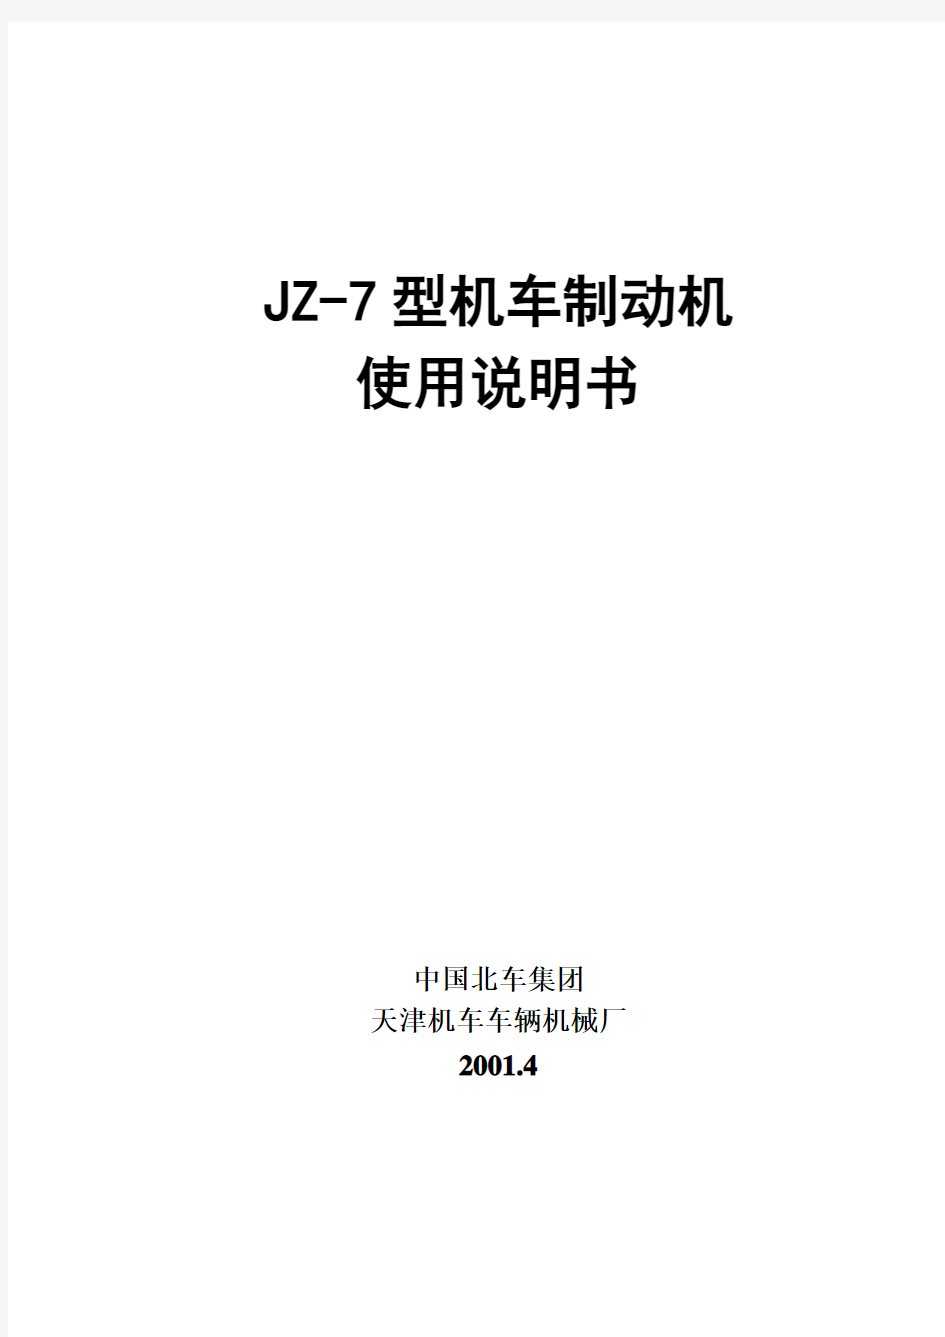 JZ-7说明书(中)